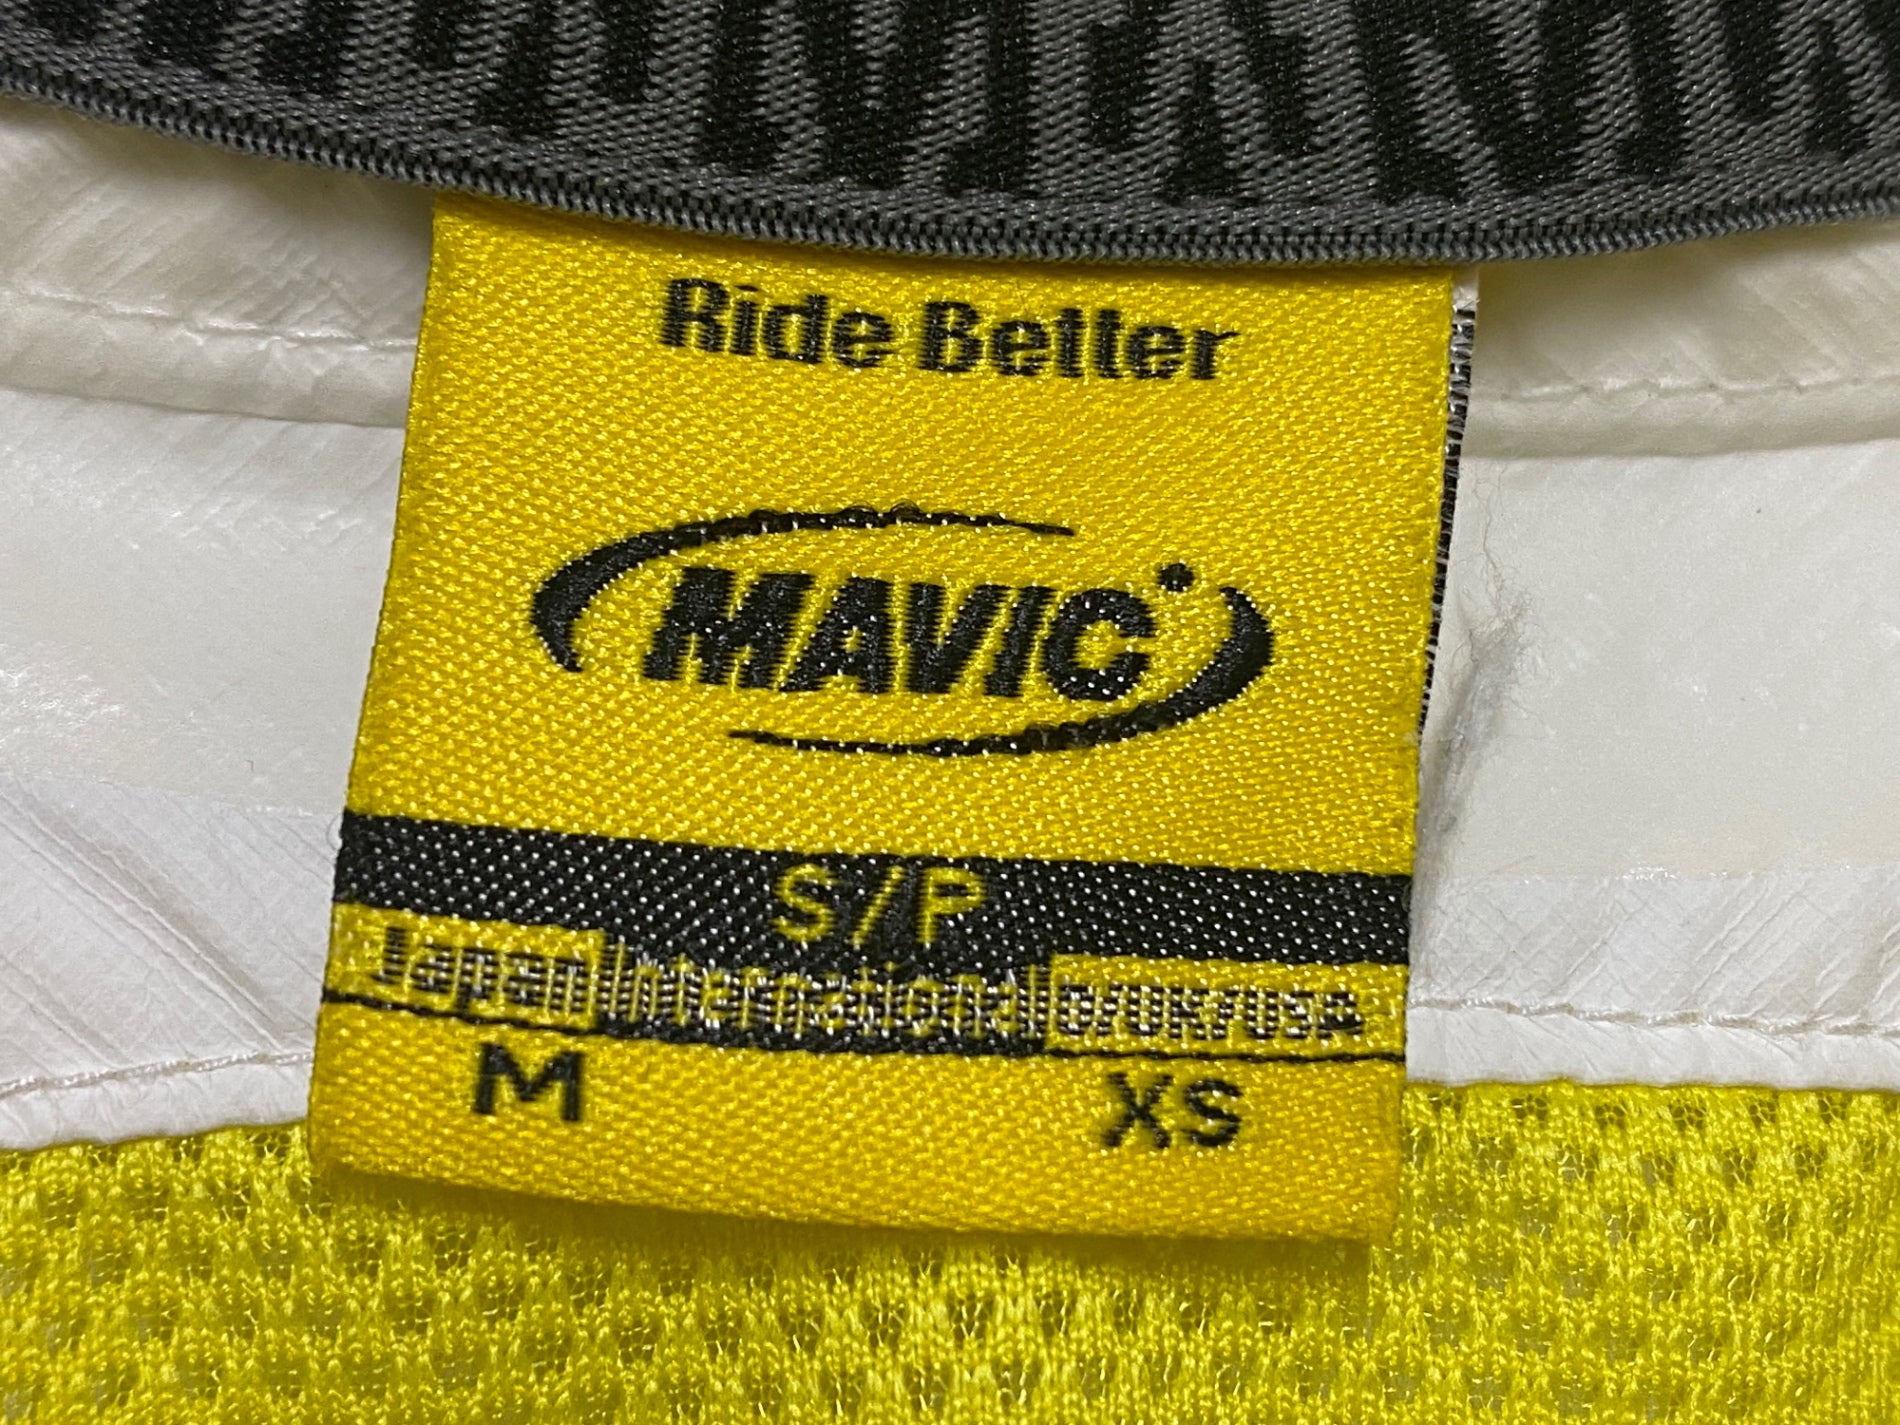 HX212 マヴィック MAVIC レインライド RAIN RIDE サイクル レインジャケット M 白 汚れあり